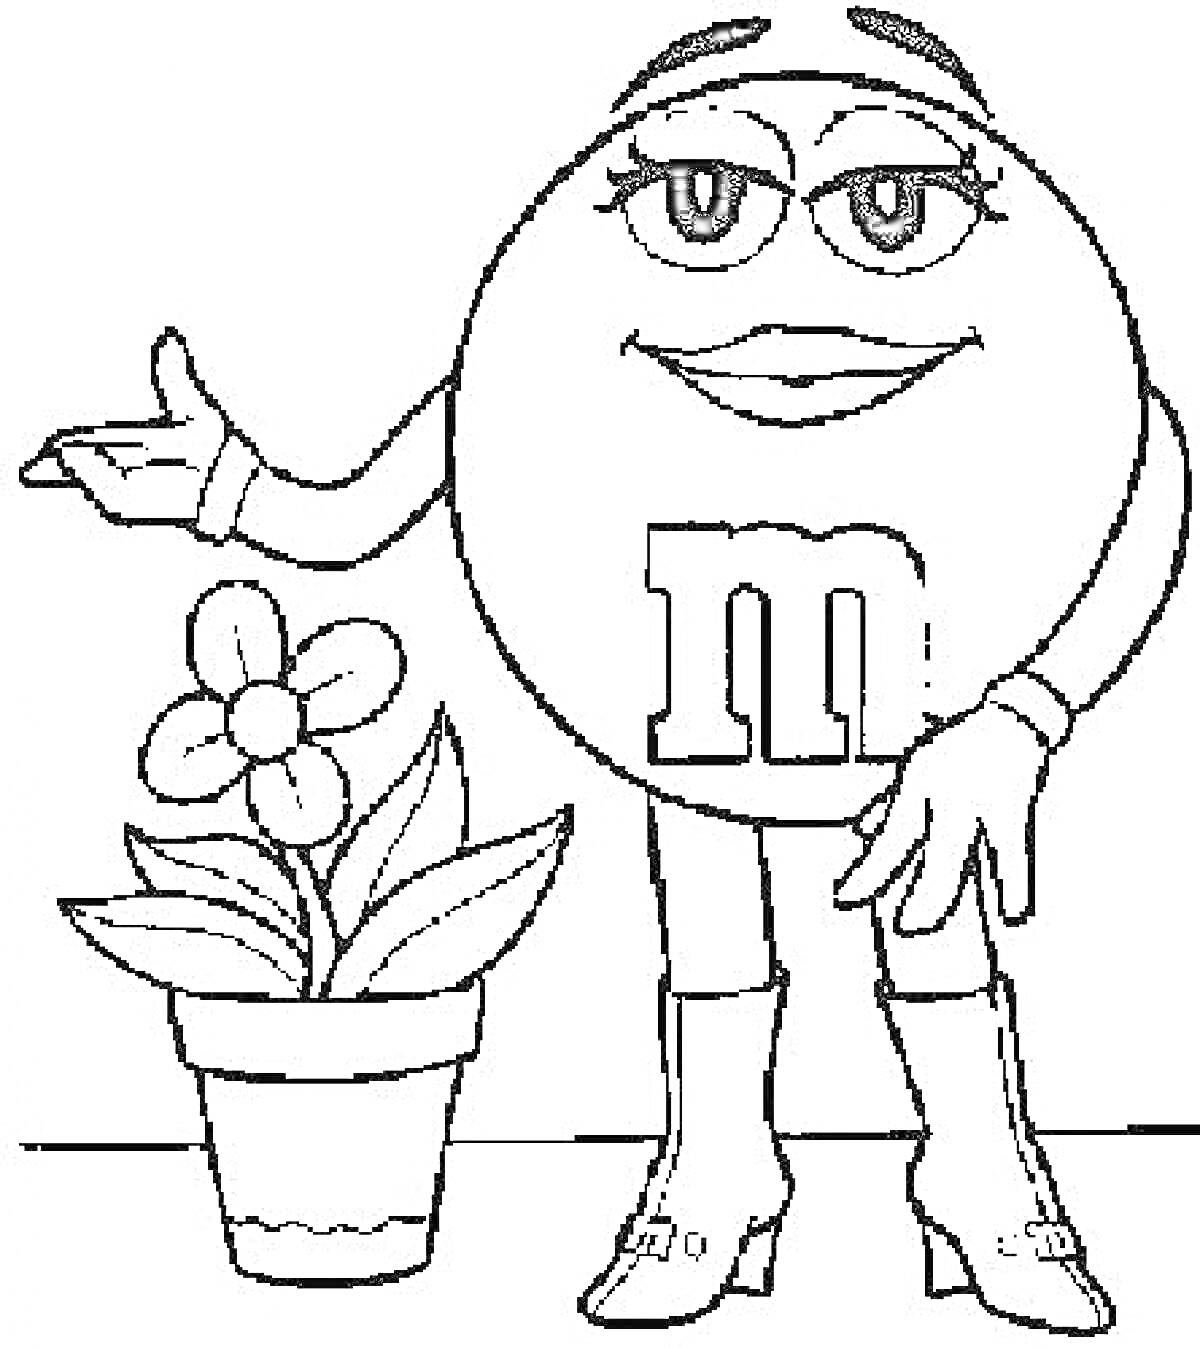 Женский персонаж M&M's в сапогах и перчатках, указывает на цветок в горшке